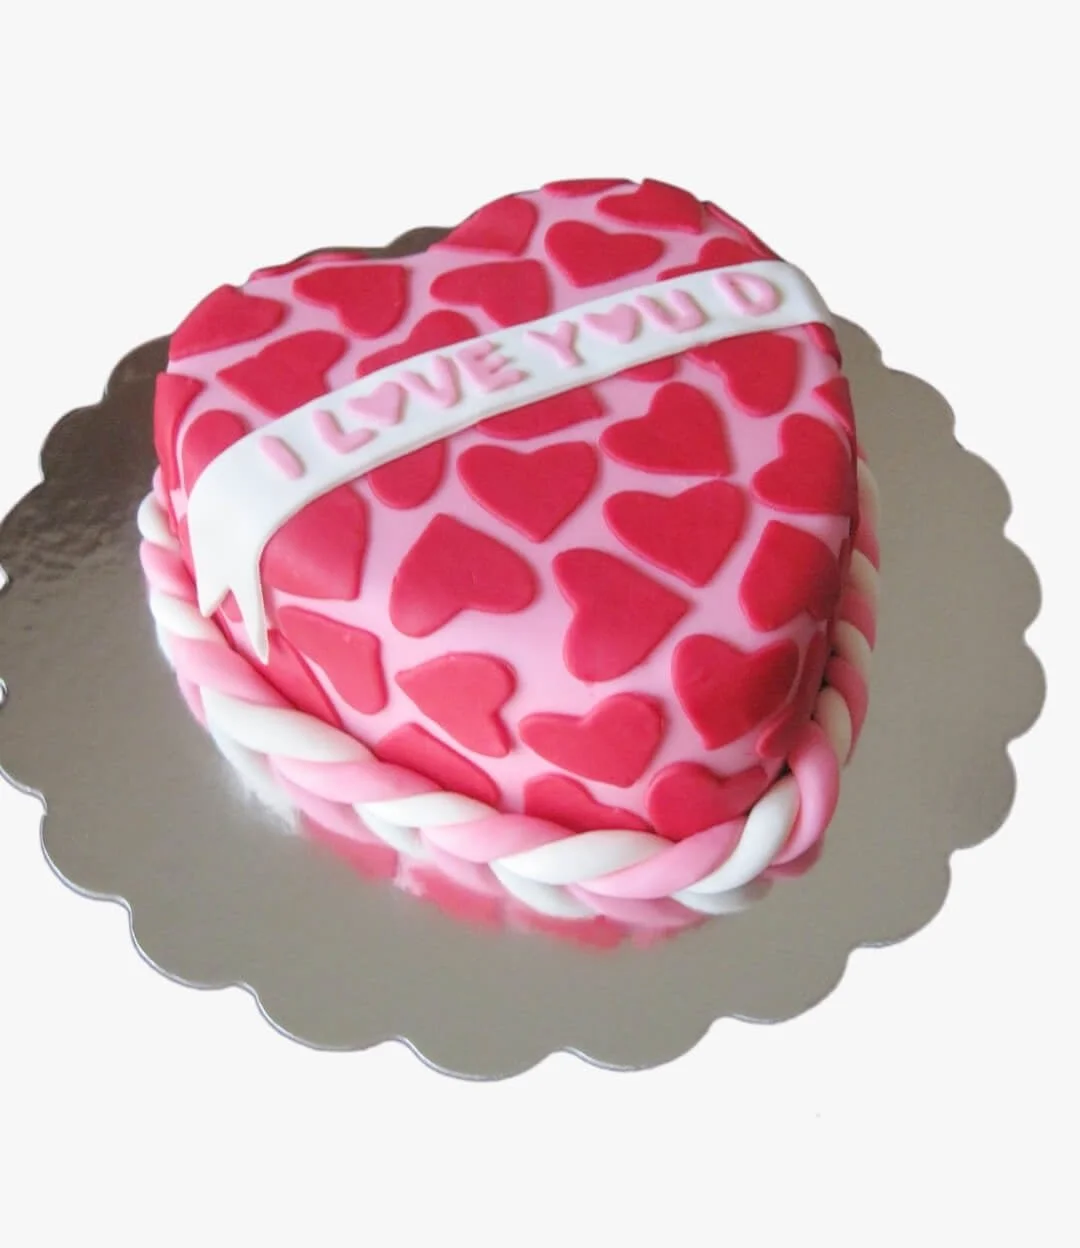 Pinky Valentine's Heart Cake by Sugar Sprinkles 